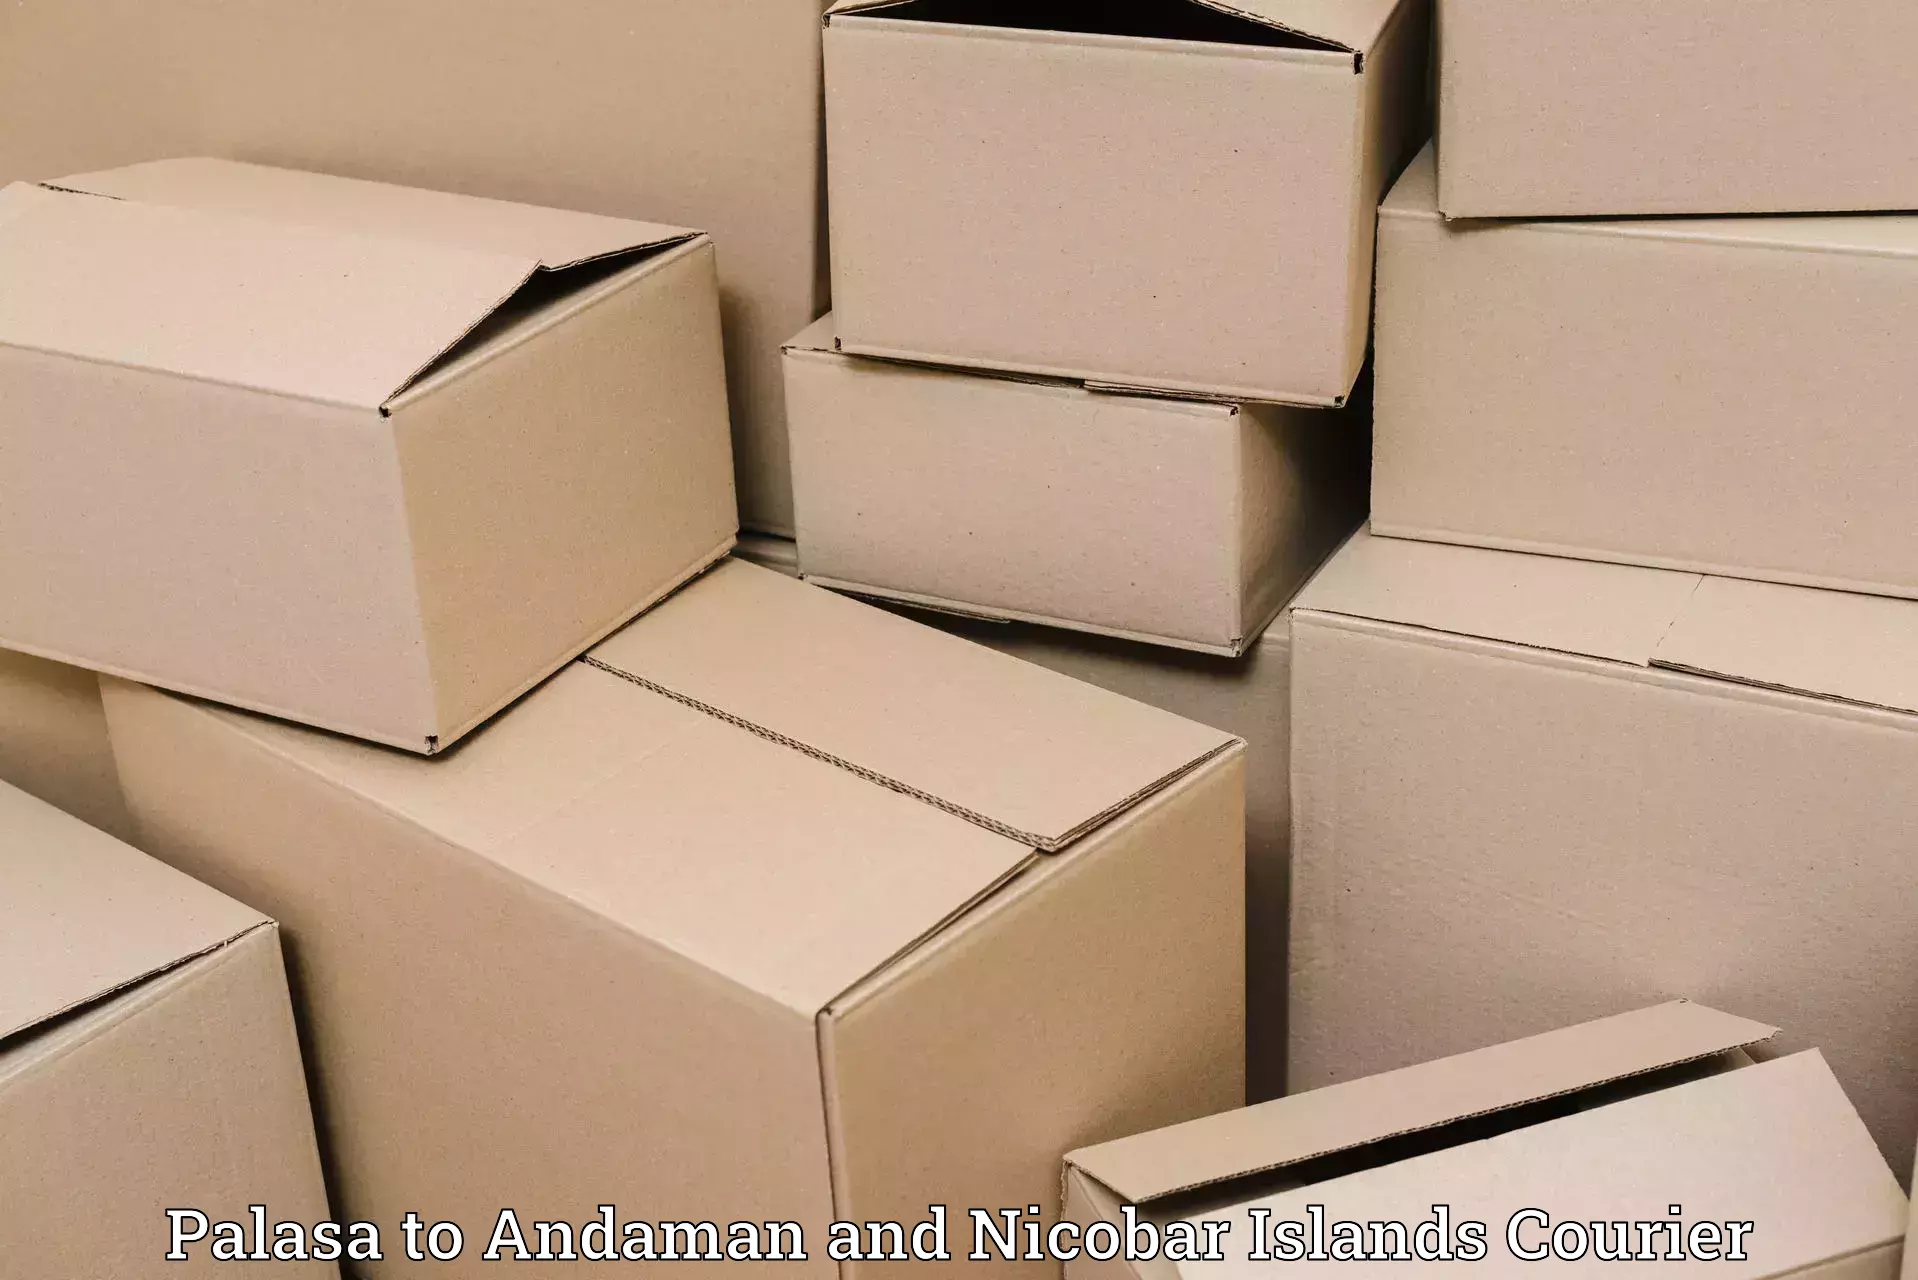 Cargo courier service Palasa to Andaman and Nicobar Islands